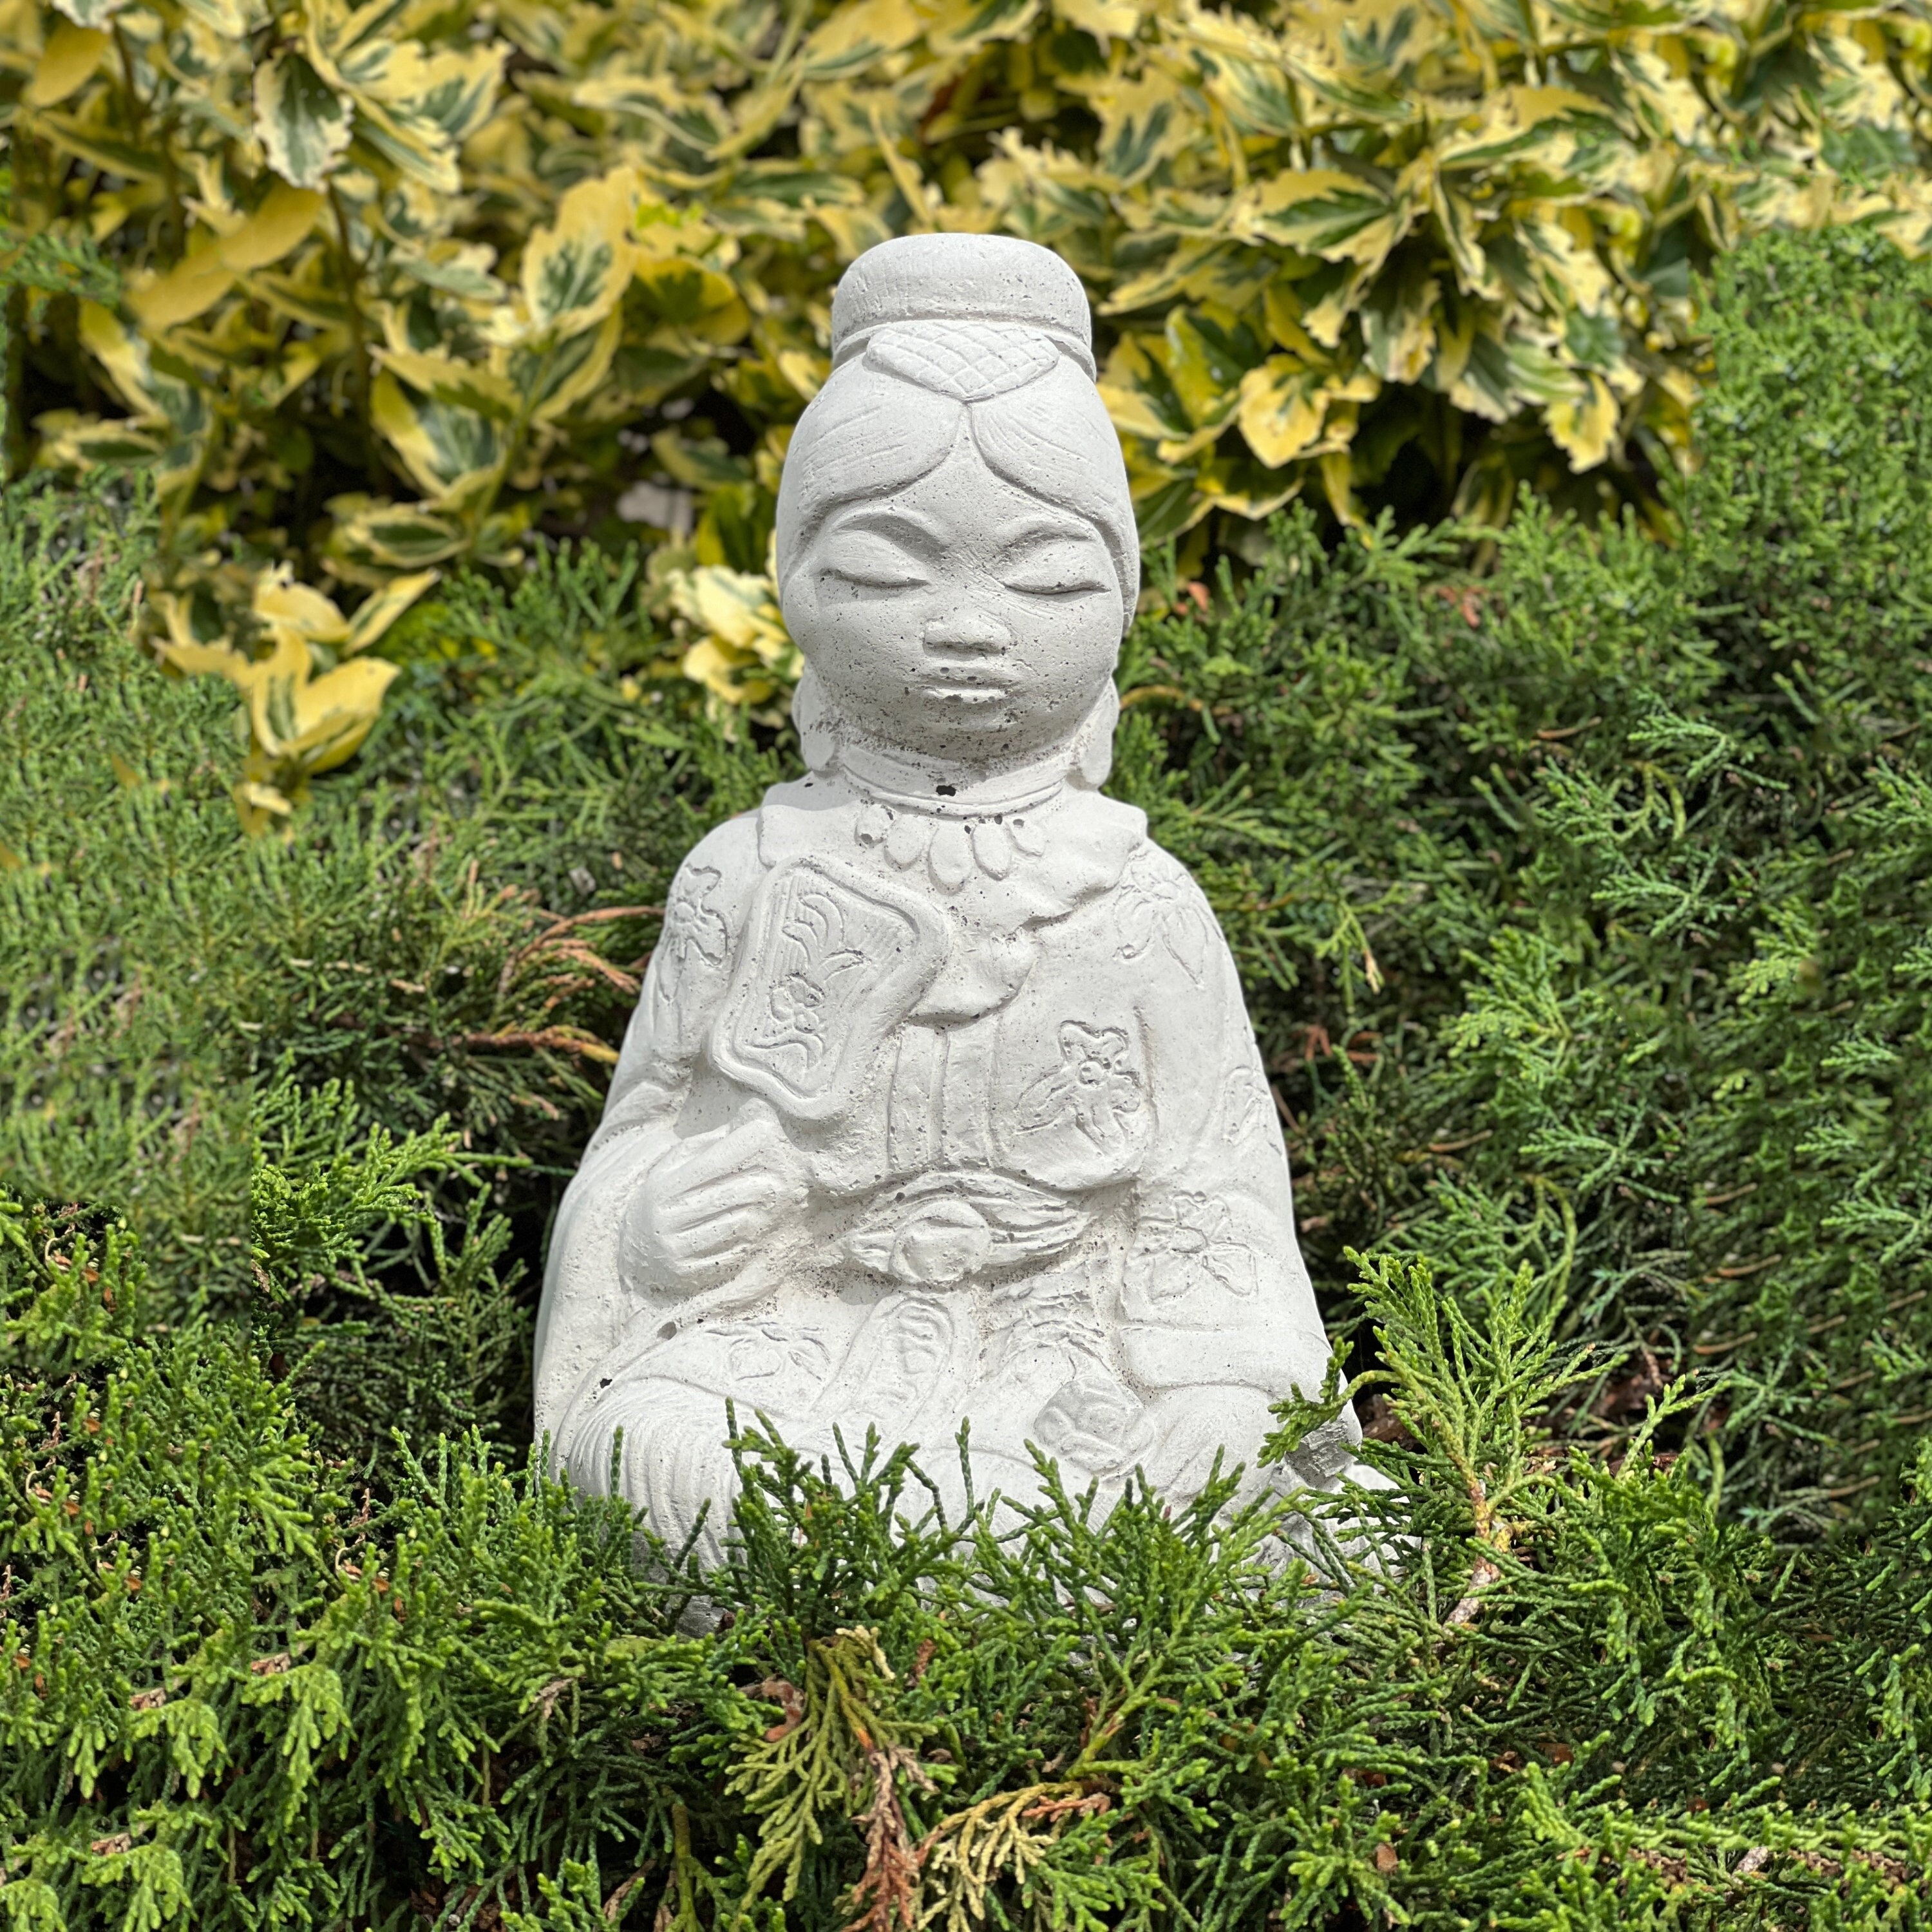 Figurine de femme chinoise Décor de jardin zen en béton Statue de geisha  japonaise Ornement en pierre extérieur Sculpture d'art d'arrière-cour  Cadeau pour les jardiniers zen -  France